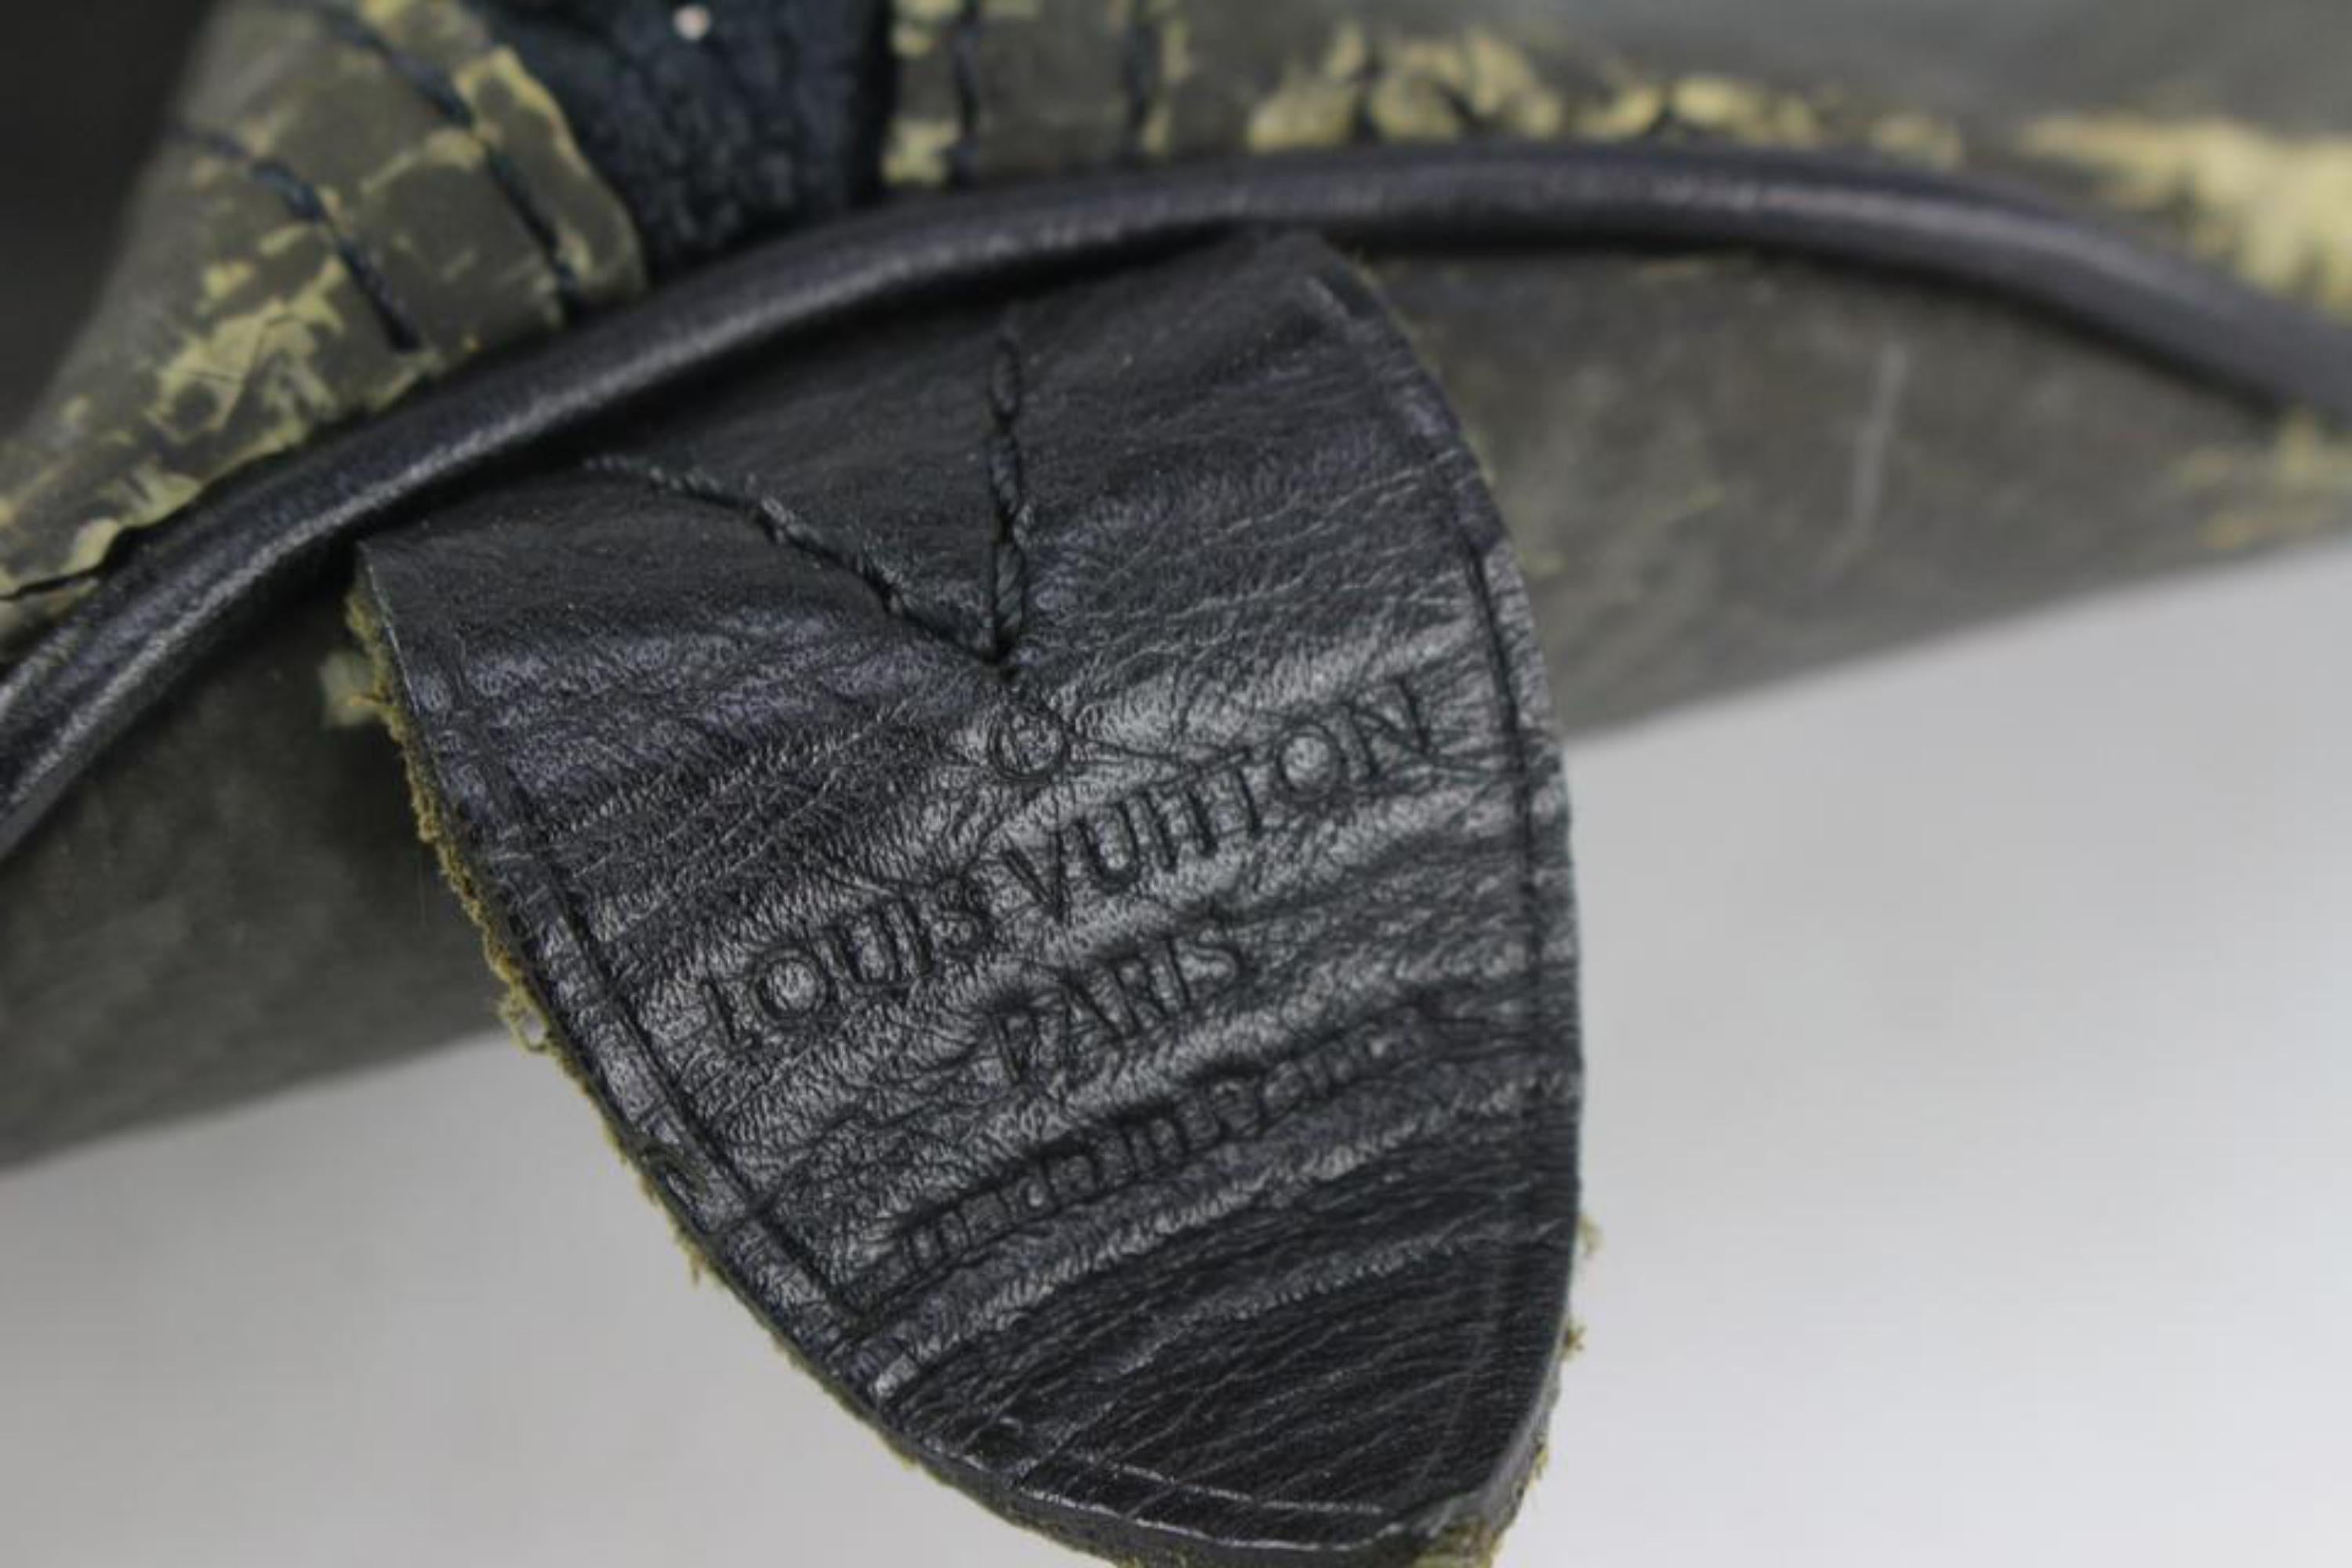 Louis Vuitton Black Carbon Fiber Damier Carbone Keepall 45 Duffle Bag 1122lv14 2